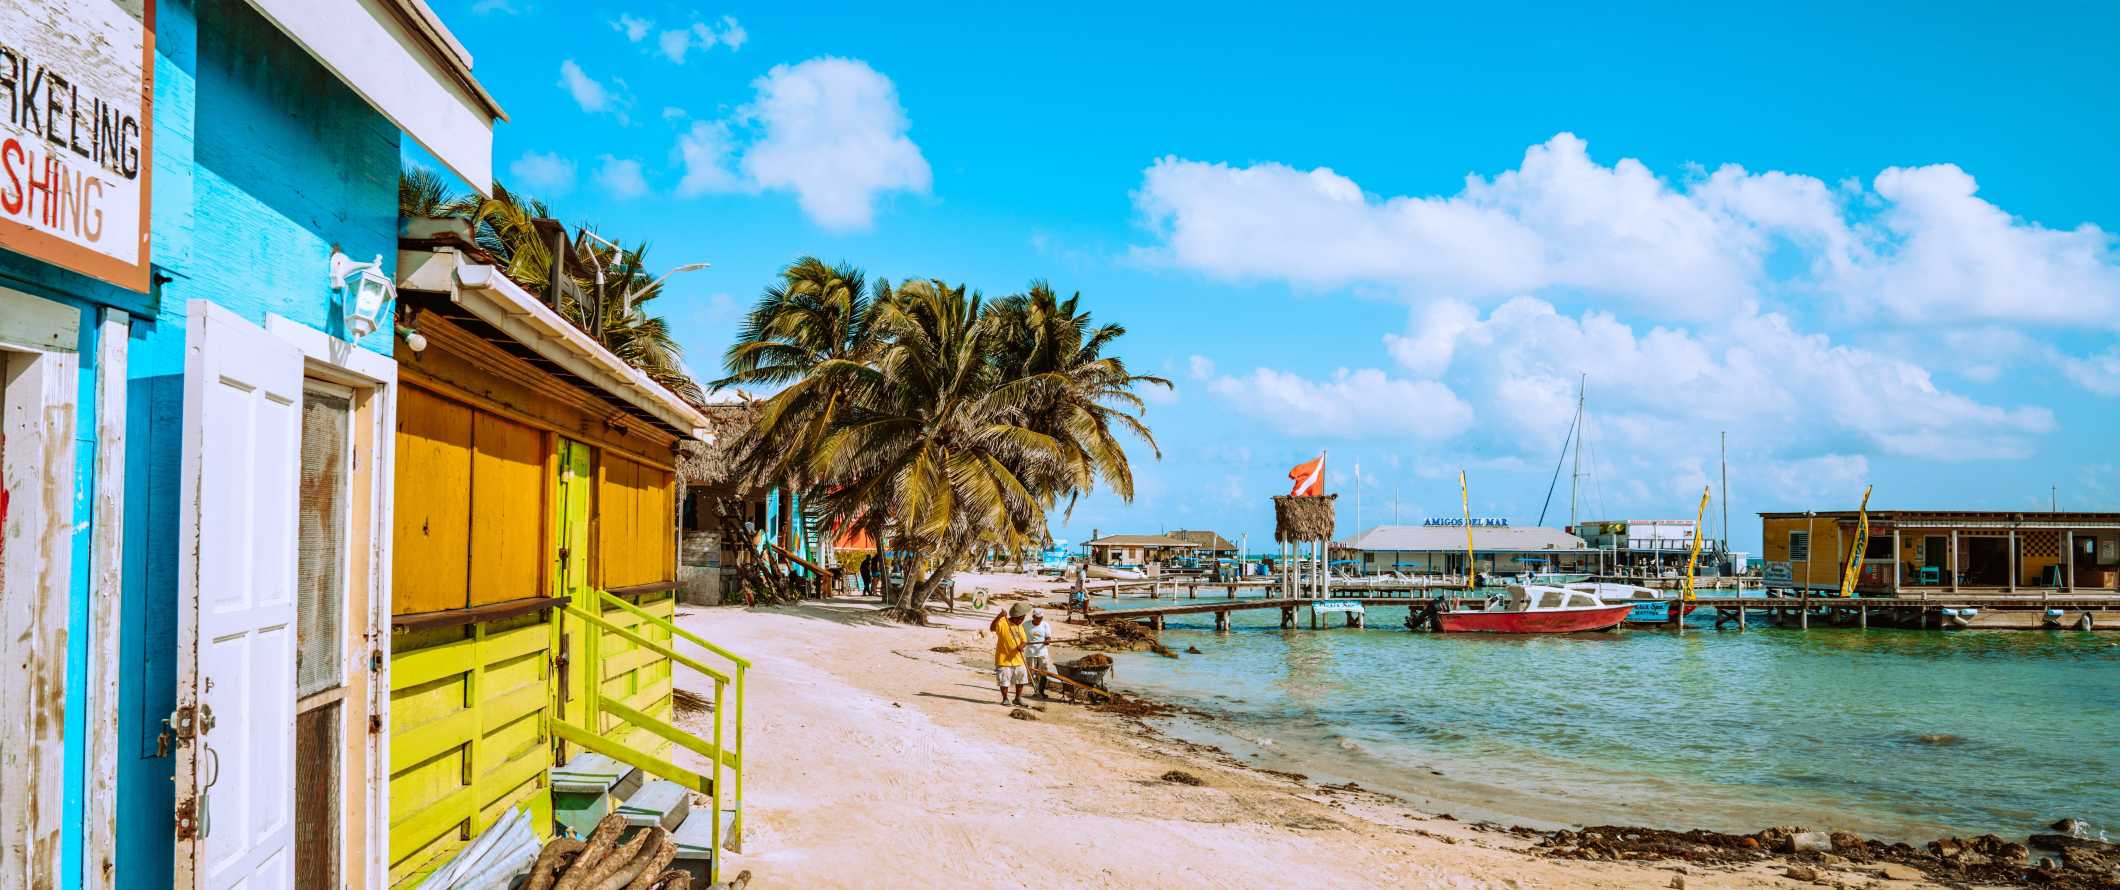 Edifícios pintados em cores vivas ao longo de uma praia tropical repleta de palmeiras em Belize